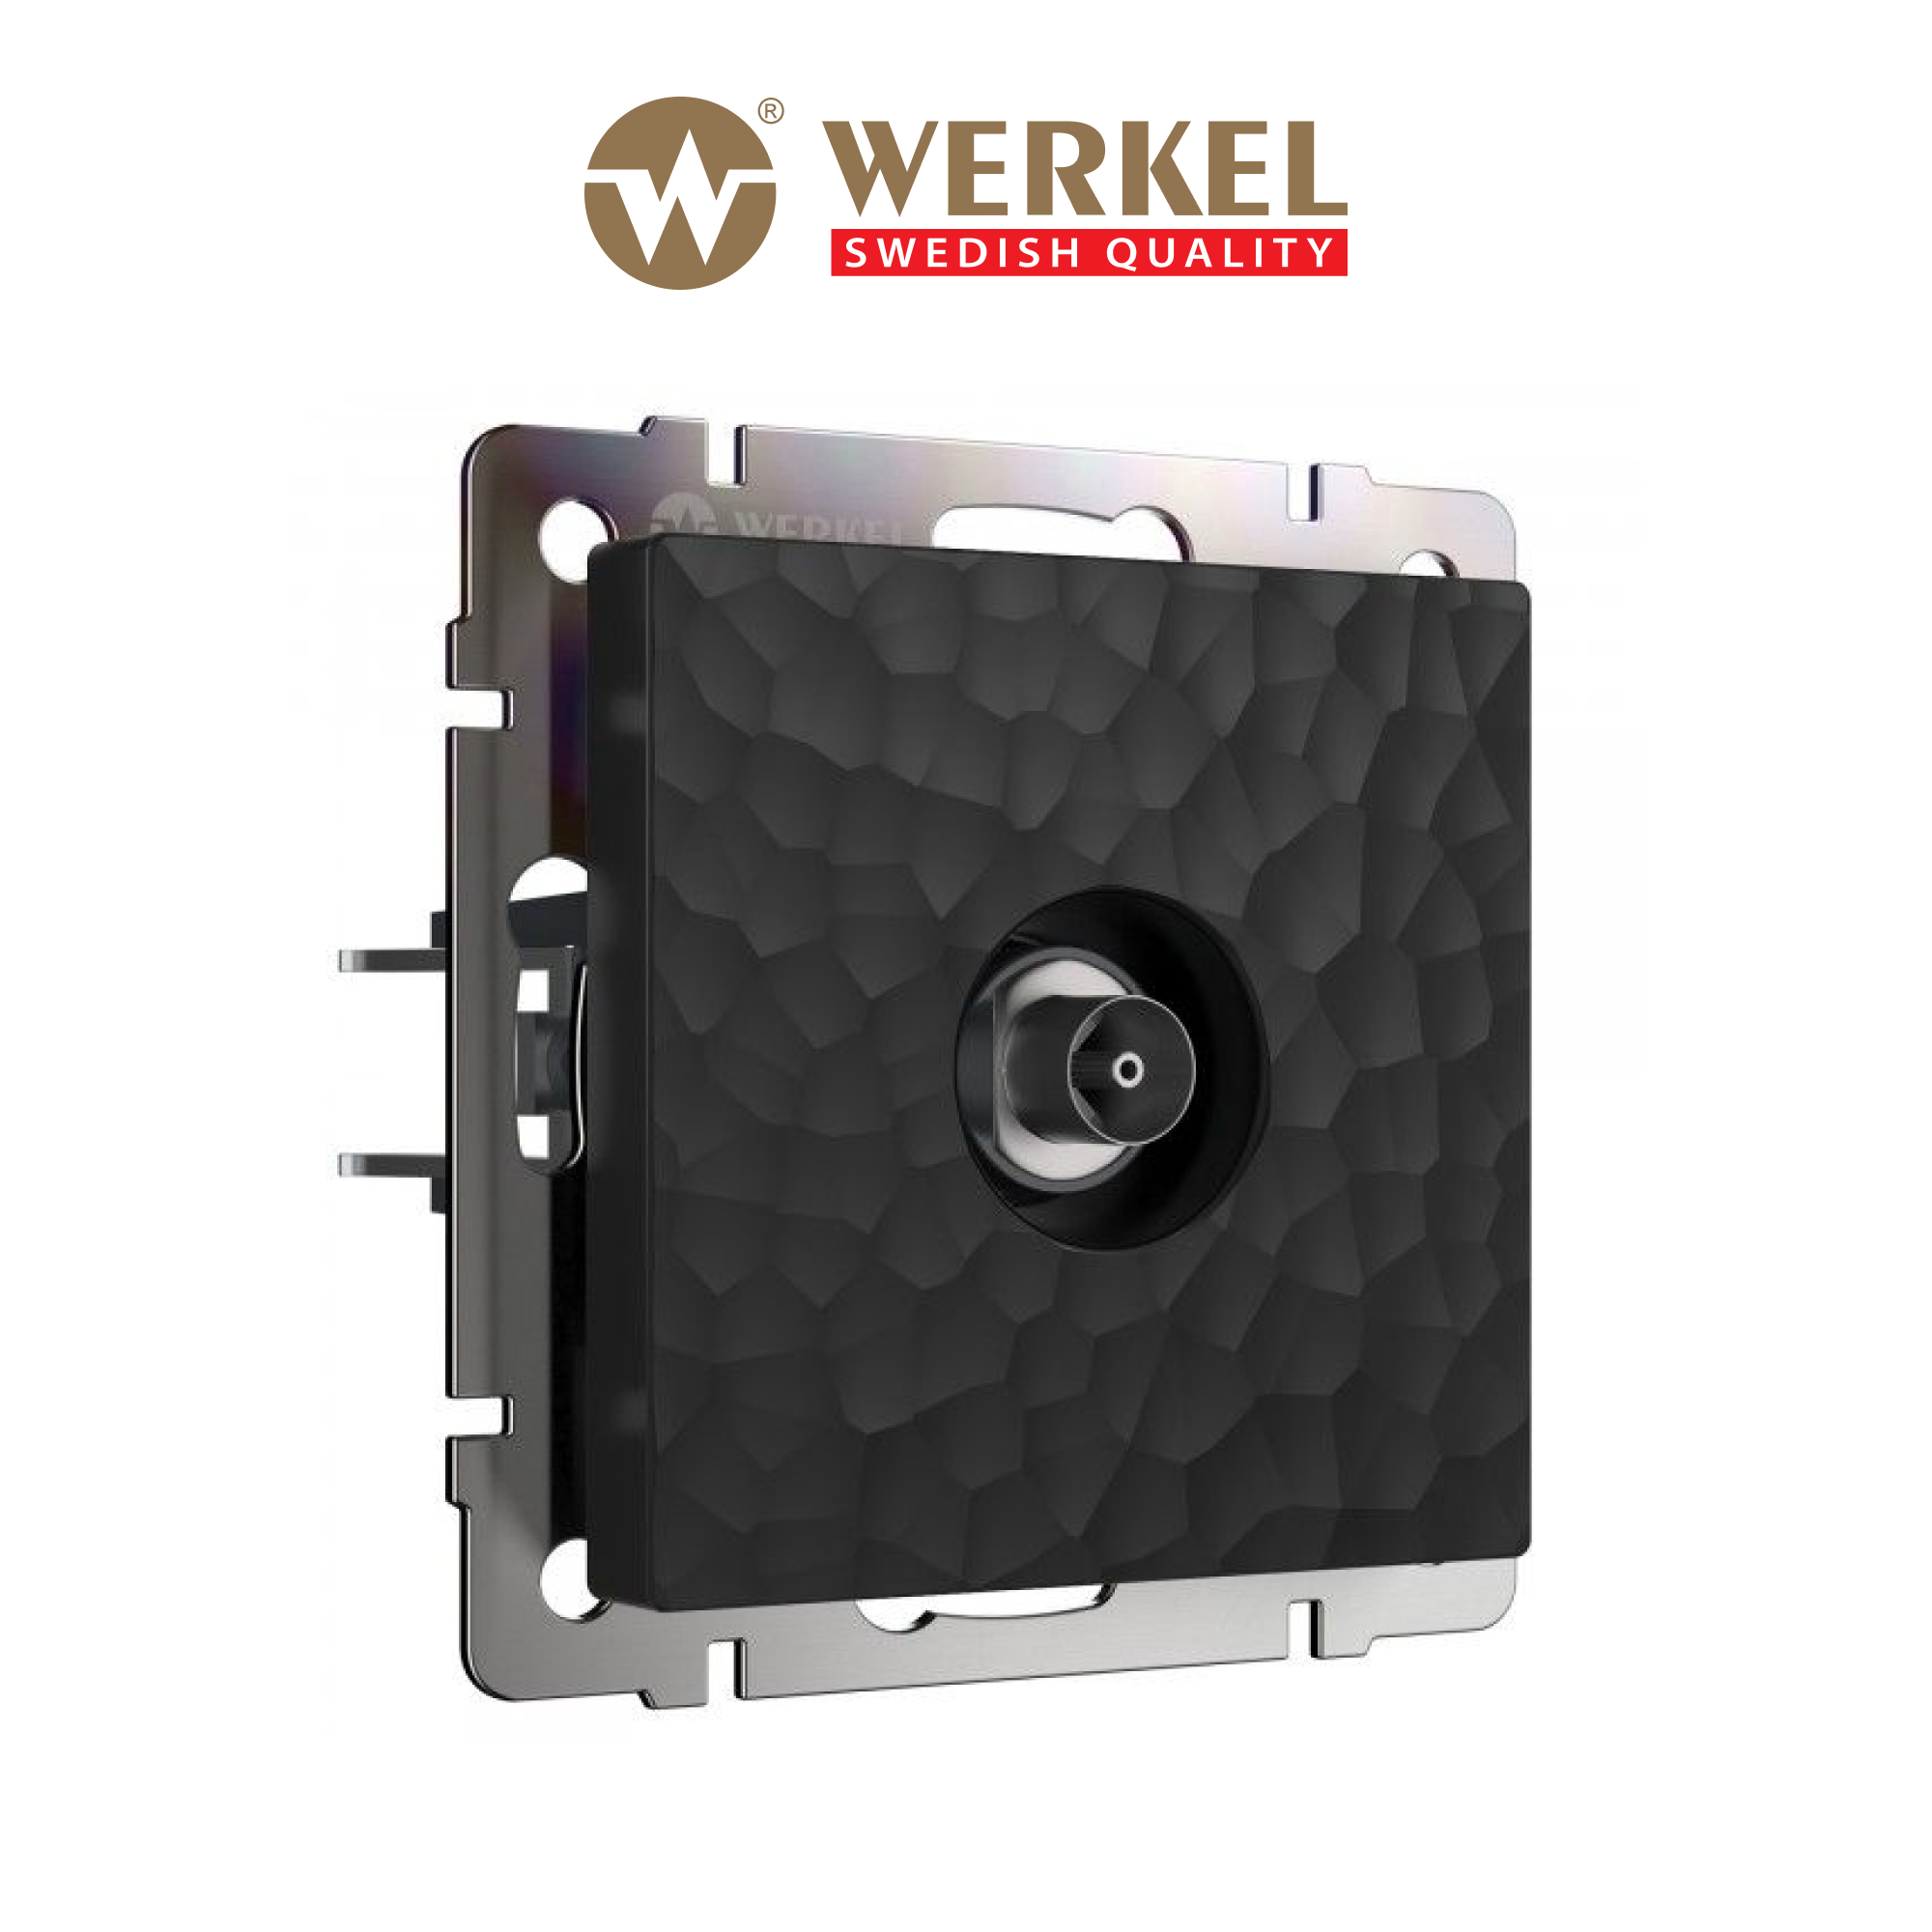  ТВ оконечная встраиваемая Werkel a052064, цвет черный  .